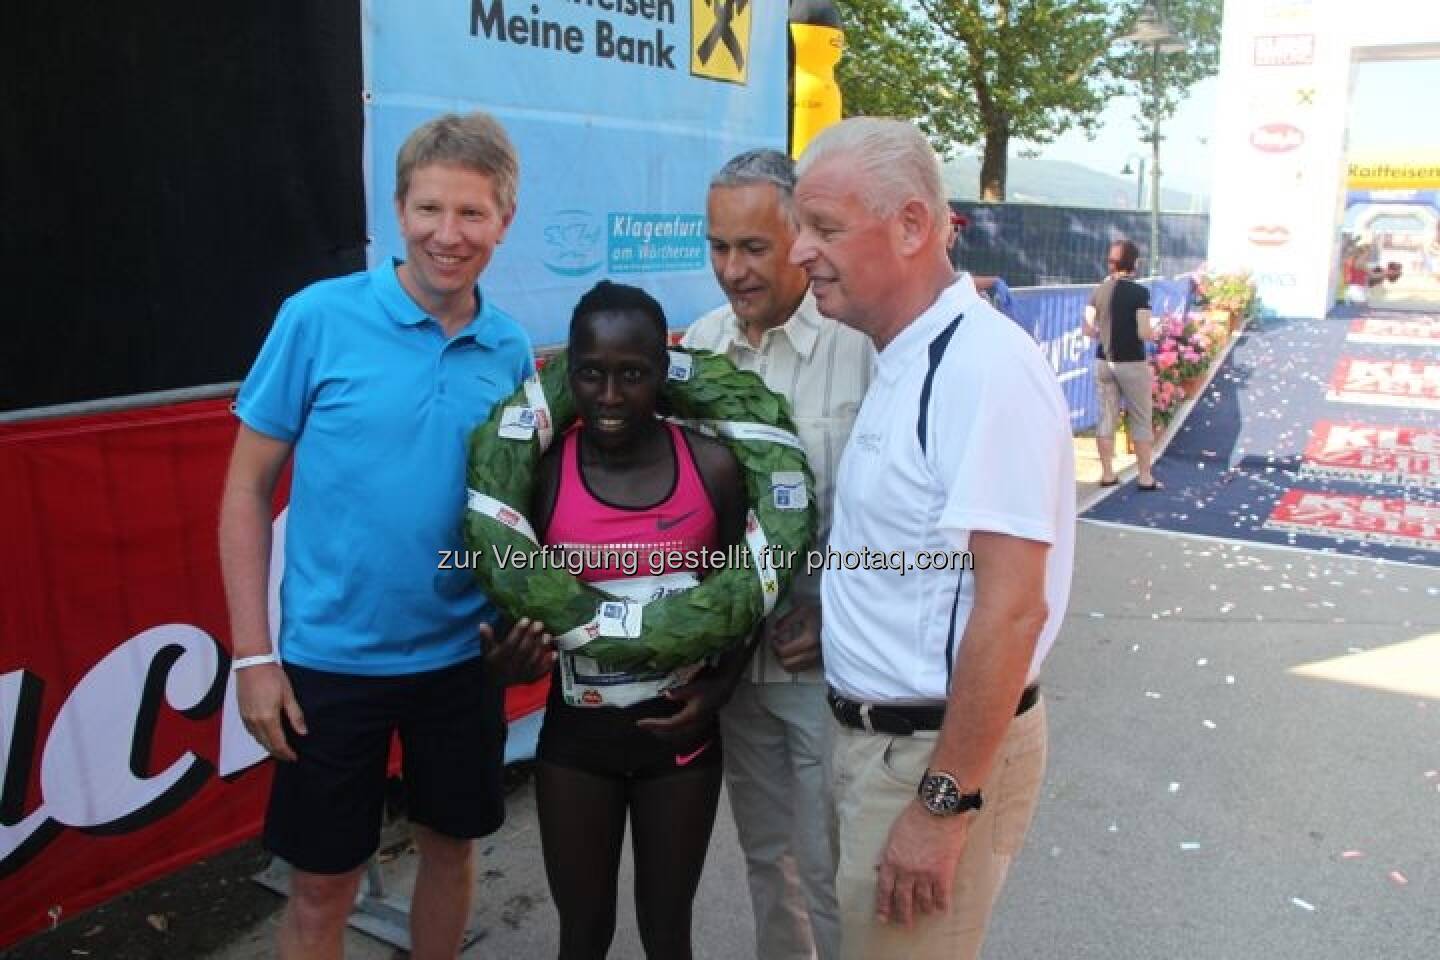 Kärnten läuft 2013, Sieger des Halbmarathons bei den Damen Florence Kiplagat (KEN), weitere Bilder unter: http://www.maxfun.at/videos/bilder.php?aid=1352